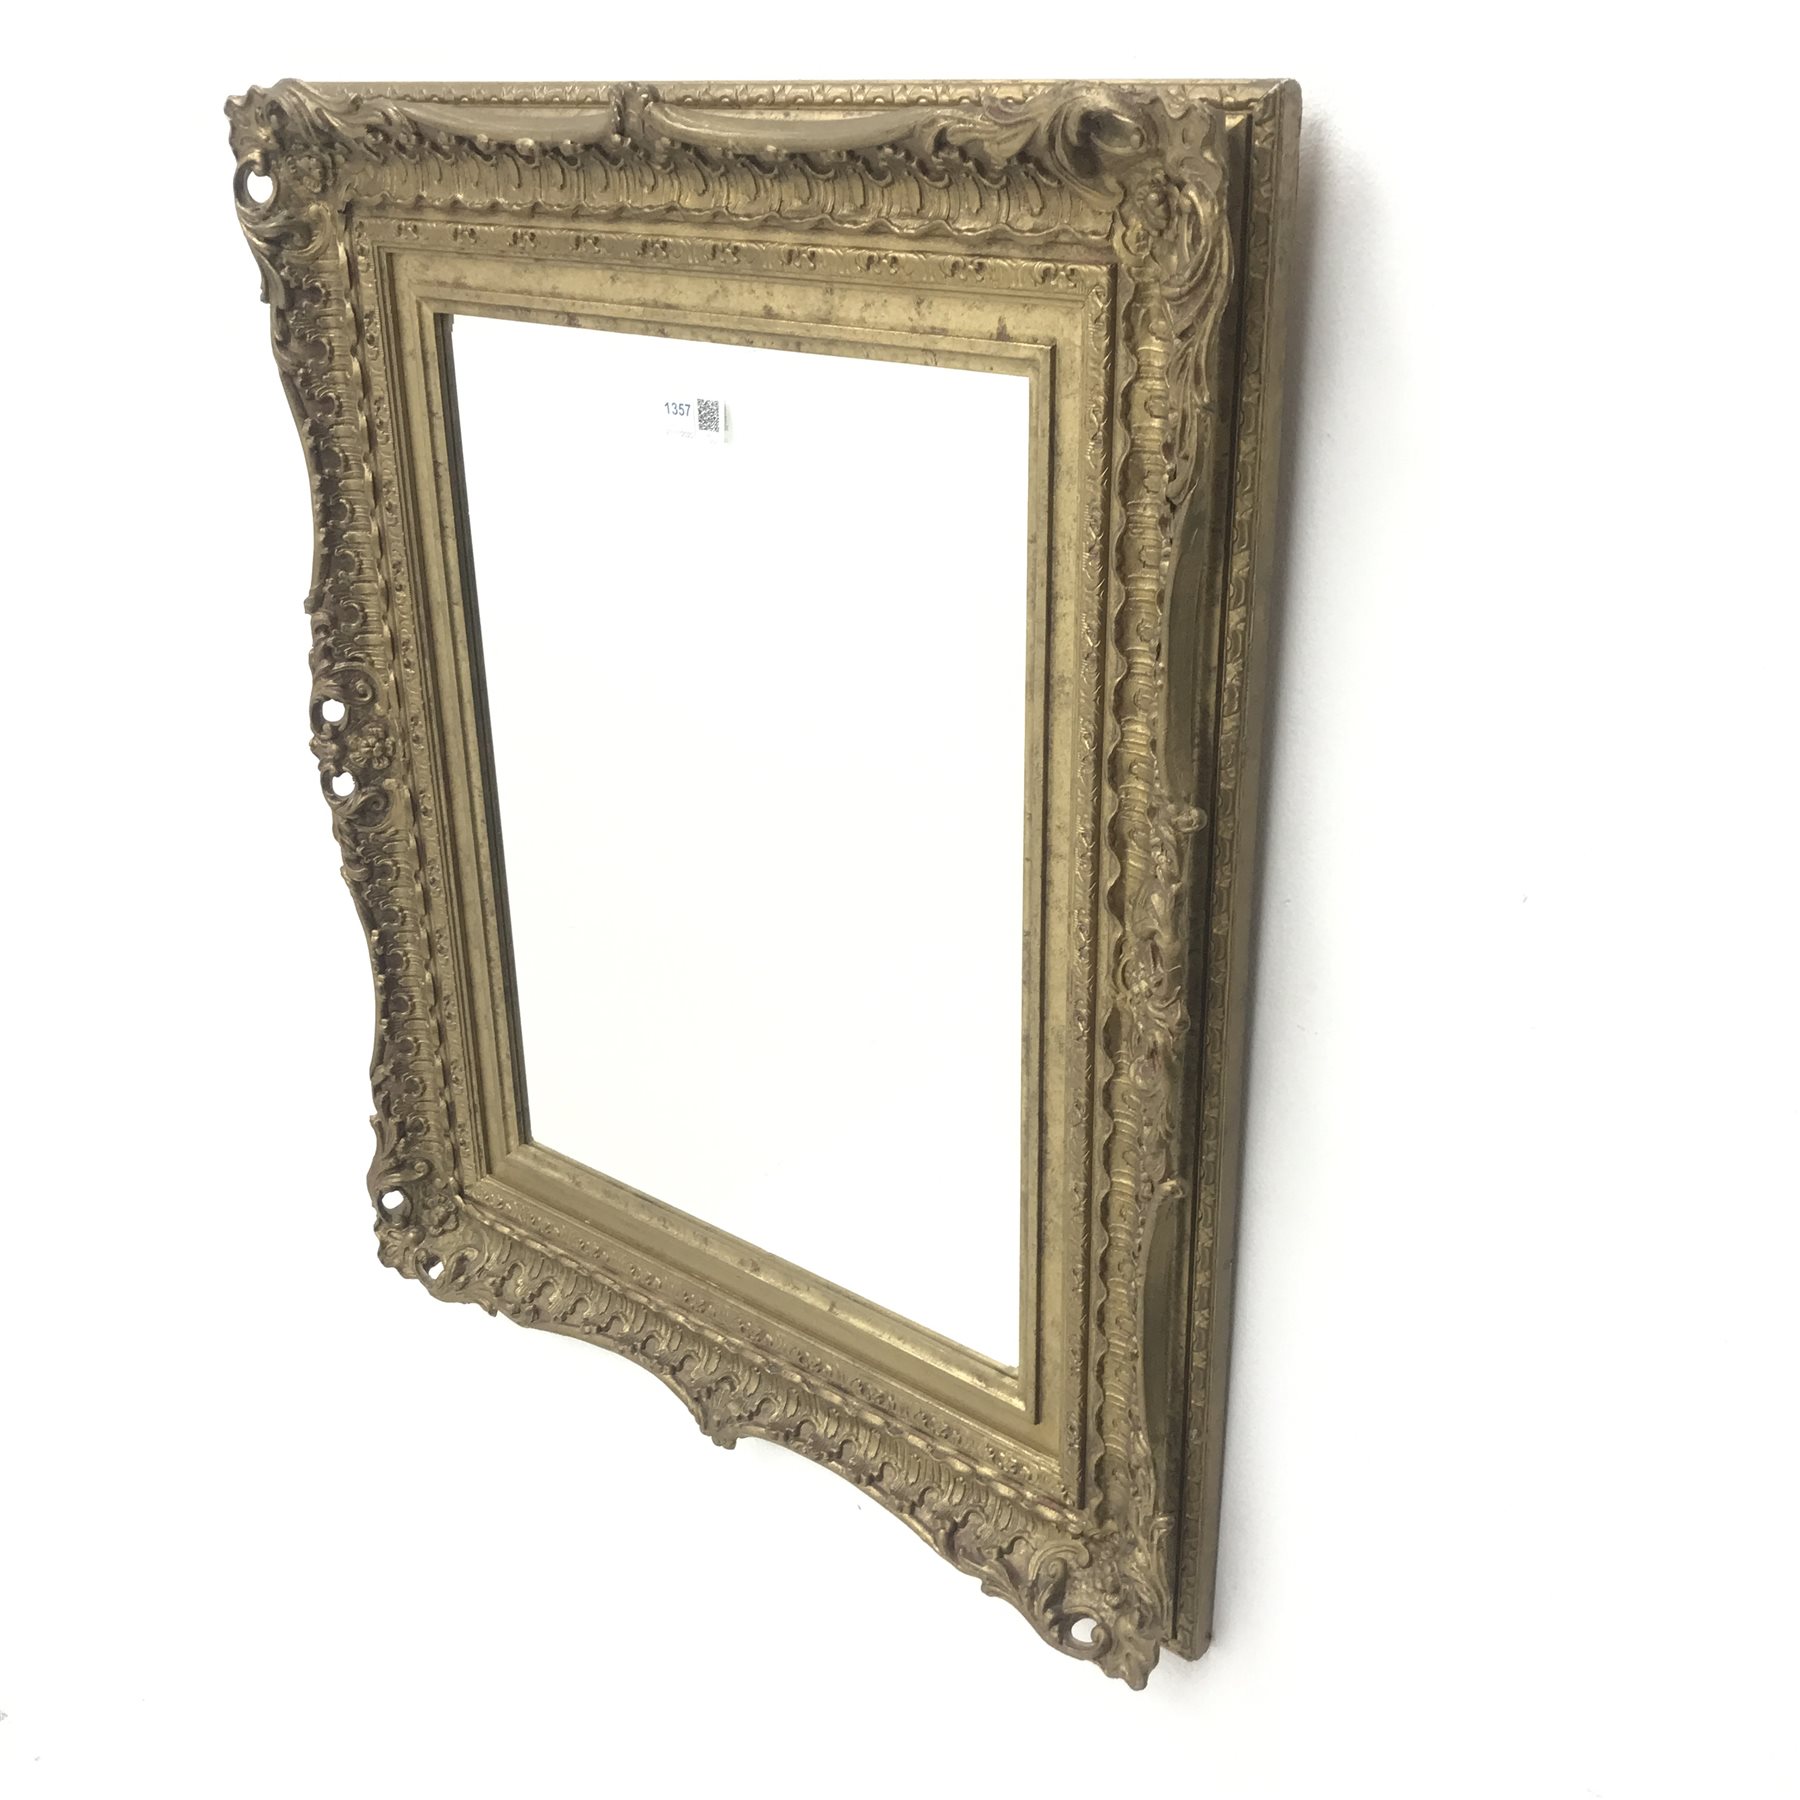 Swept gilt framed bevel edge mirror, W54cm, H65cm - Image 3 of 6